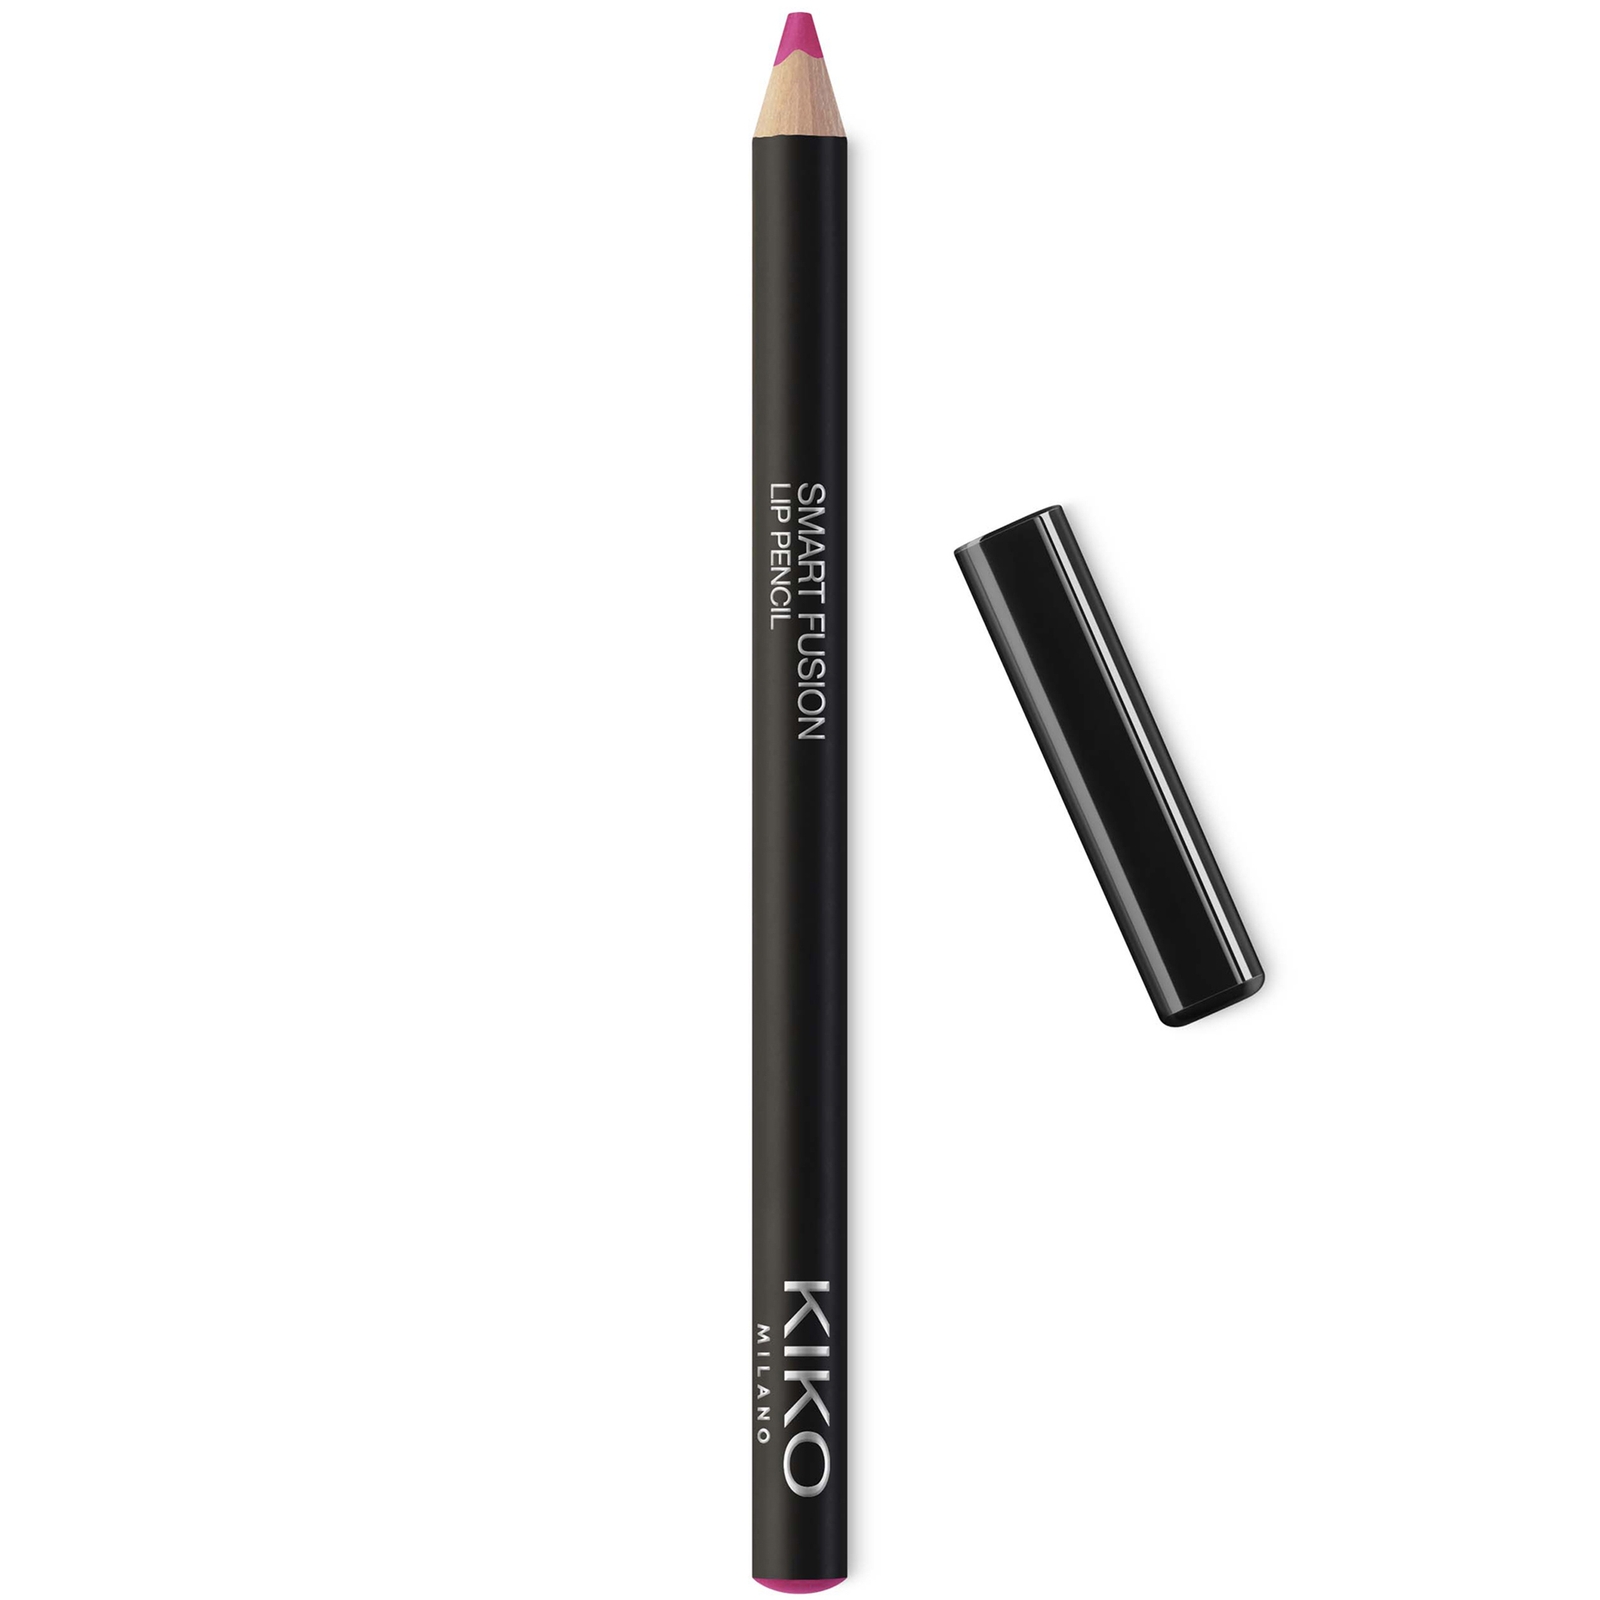 KIKO Milano Smart Fusion Lip Pencil 0.9g (Various Shades) - 27 Lively Pink